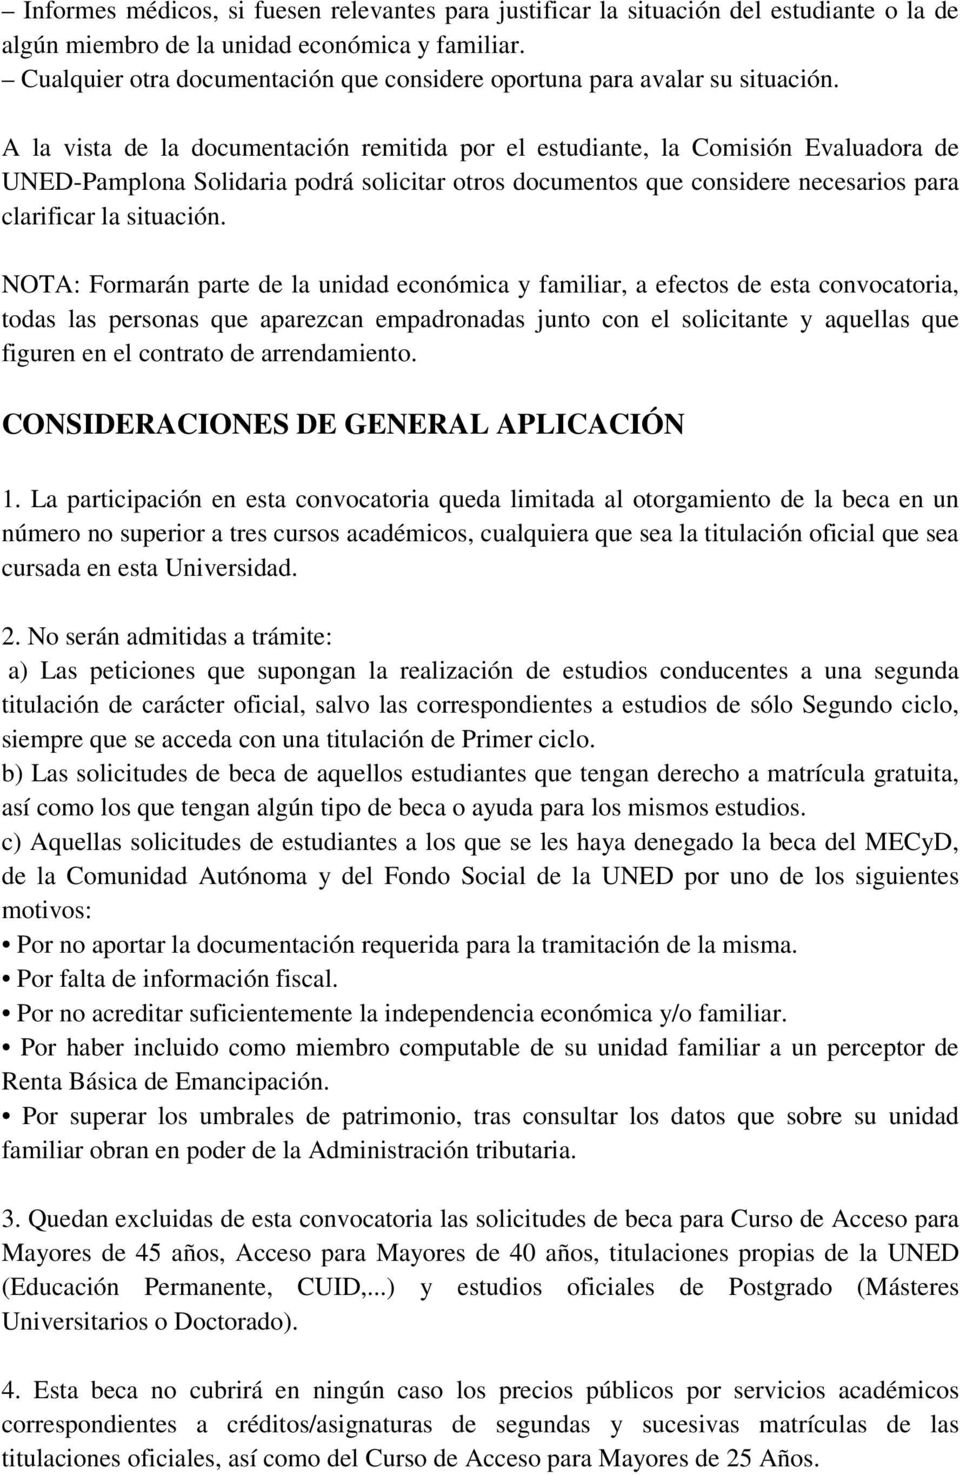 A la vista de la documentación remitida por el estudiante, la Comisión Evaluadora de UNED-Pamplona Solidaria podrá solicitar otros documentos que considere necesarios para clarificar la situación.